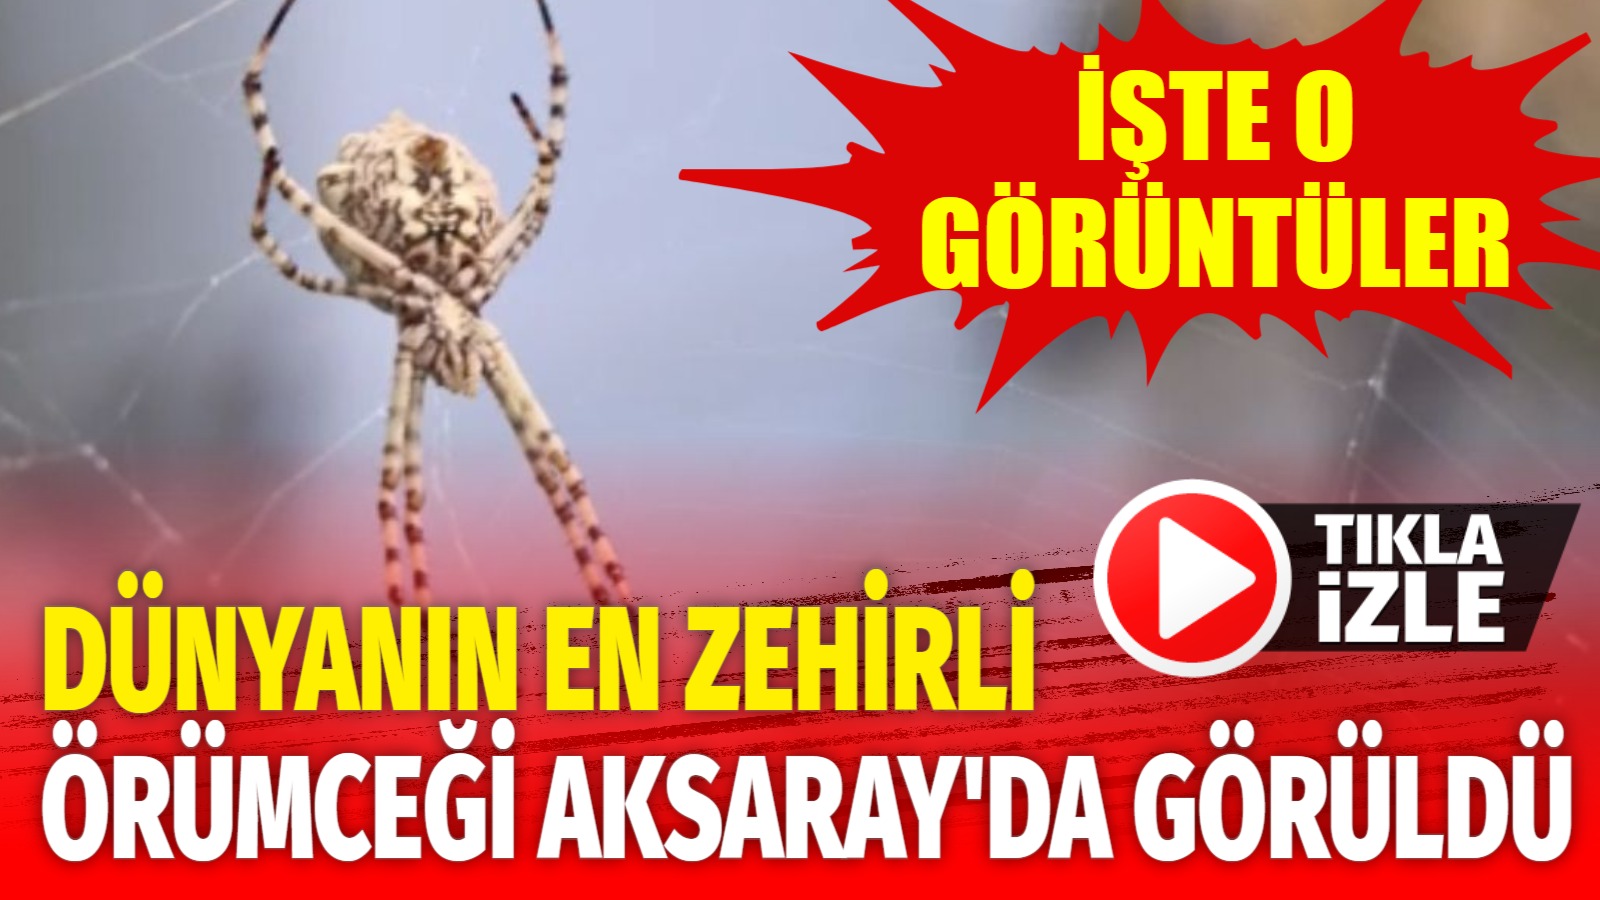 Dünyanın en zehirli örümceği Aksaray’da görüldü!